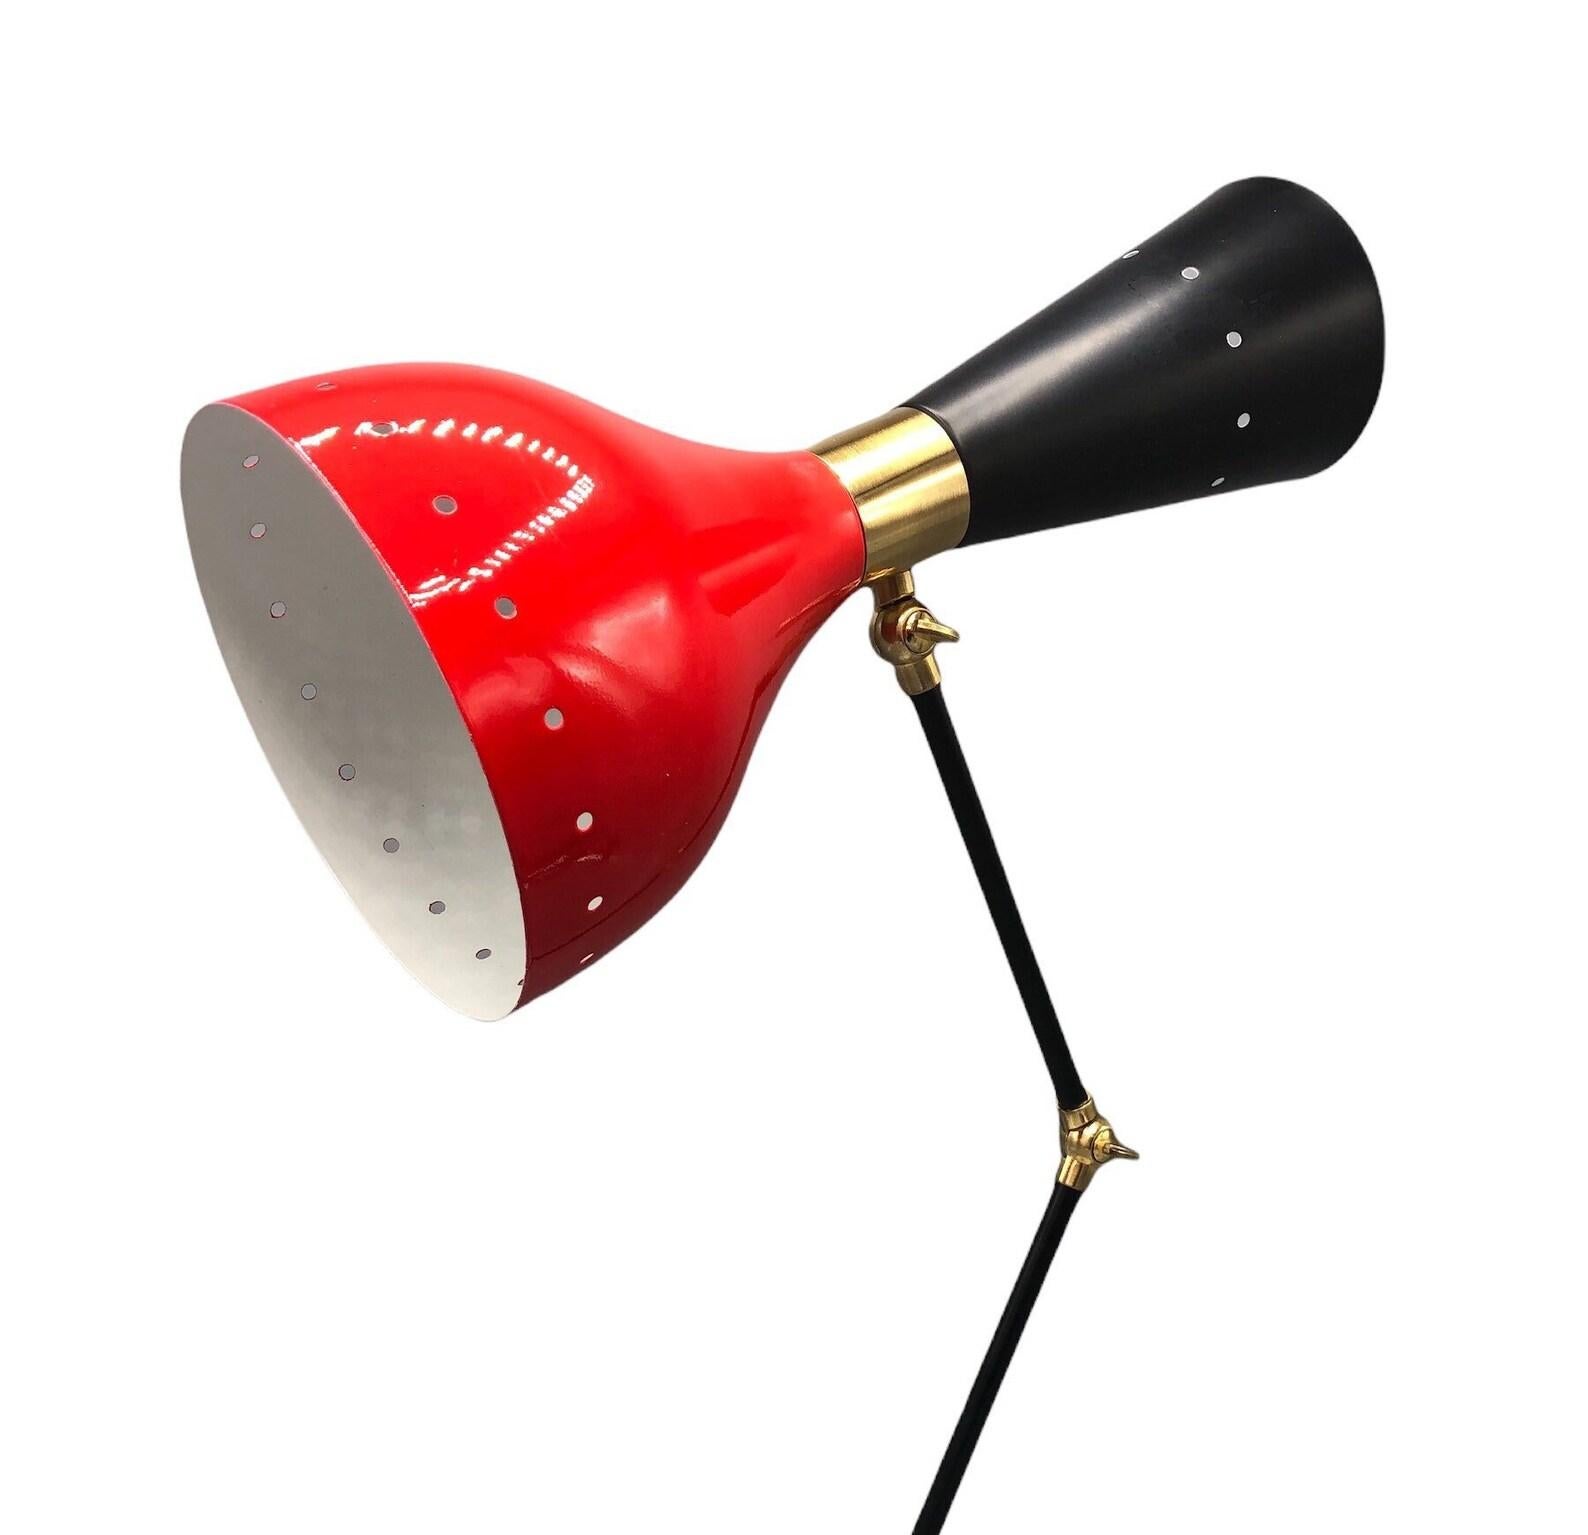 Moderne verstellbare Schreibtischlampe aus Messing mit Marmorsockel im italienischen Stil. Roter Schirm und schwarze Arme mit Messingbeschlägen. 
Abmessungen: 
Basis Marmor Durchmesser: 7